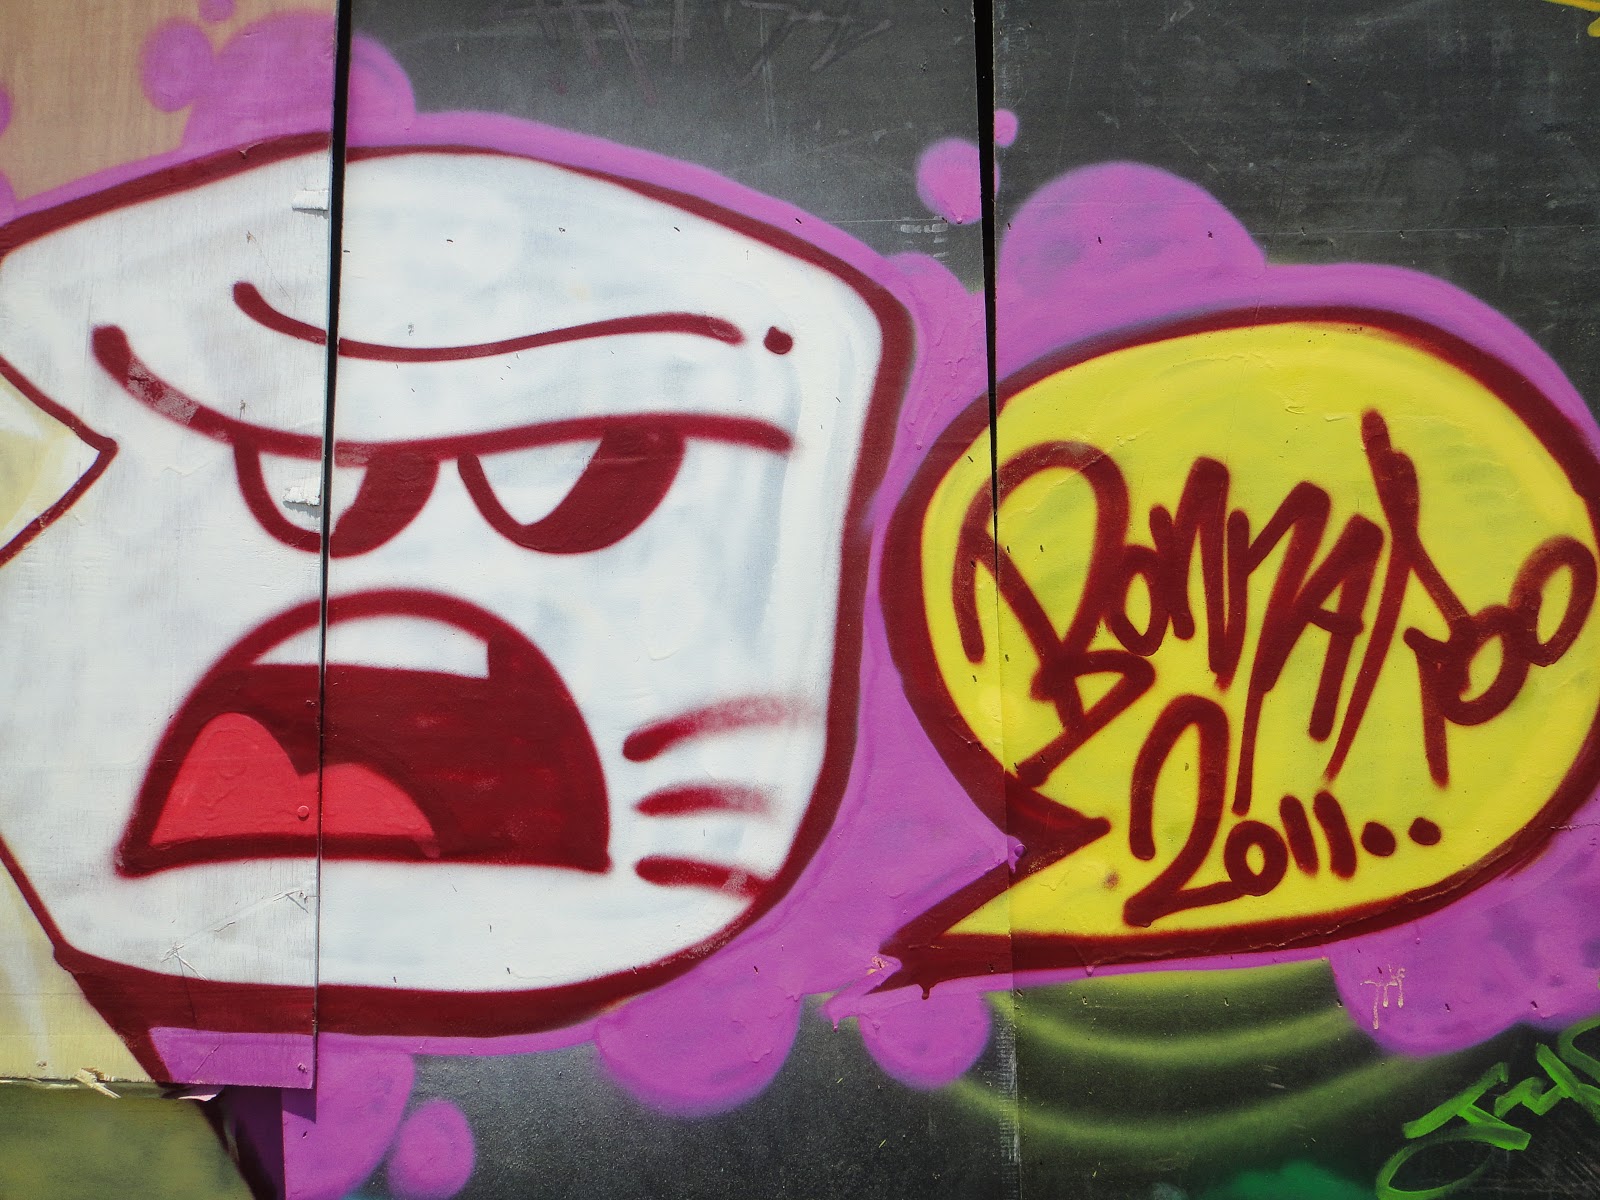 Bonnaroo graffiti 2011